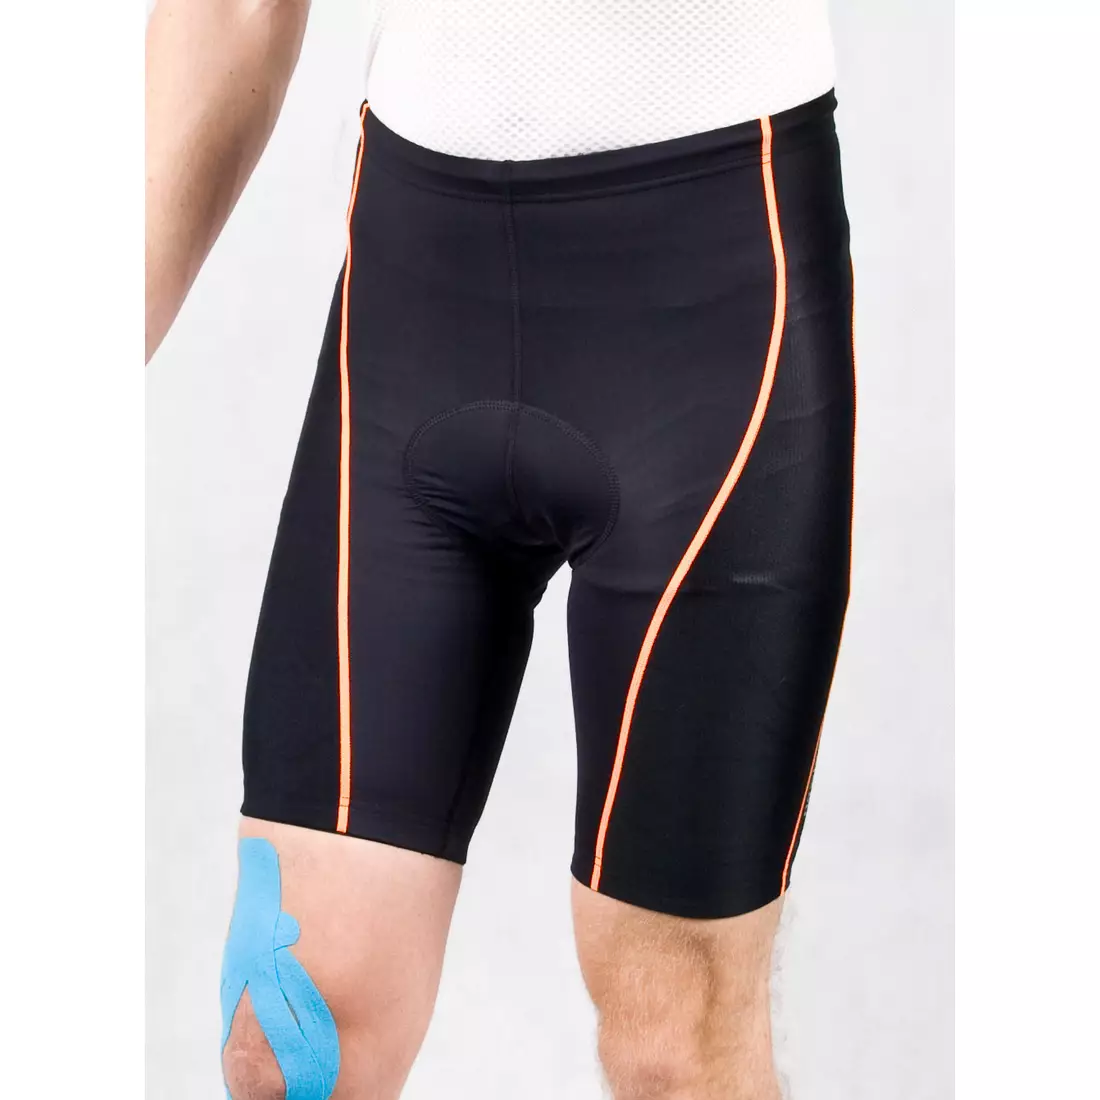 NEWLINE 8 PANELS SHORT - pantaloni scurți de ciclism pentru bărbați 81714-974, culoare: negru și portocaliu